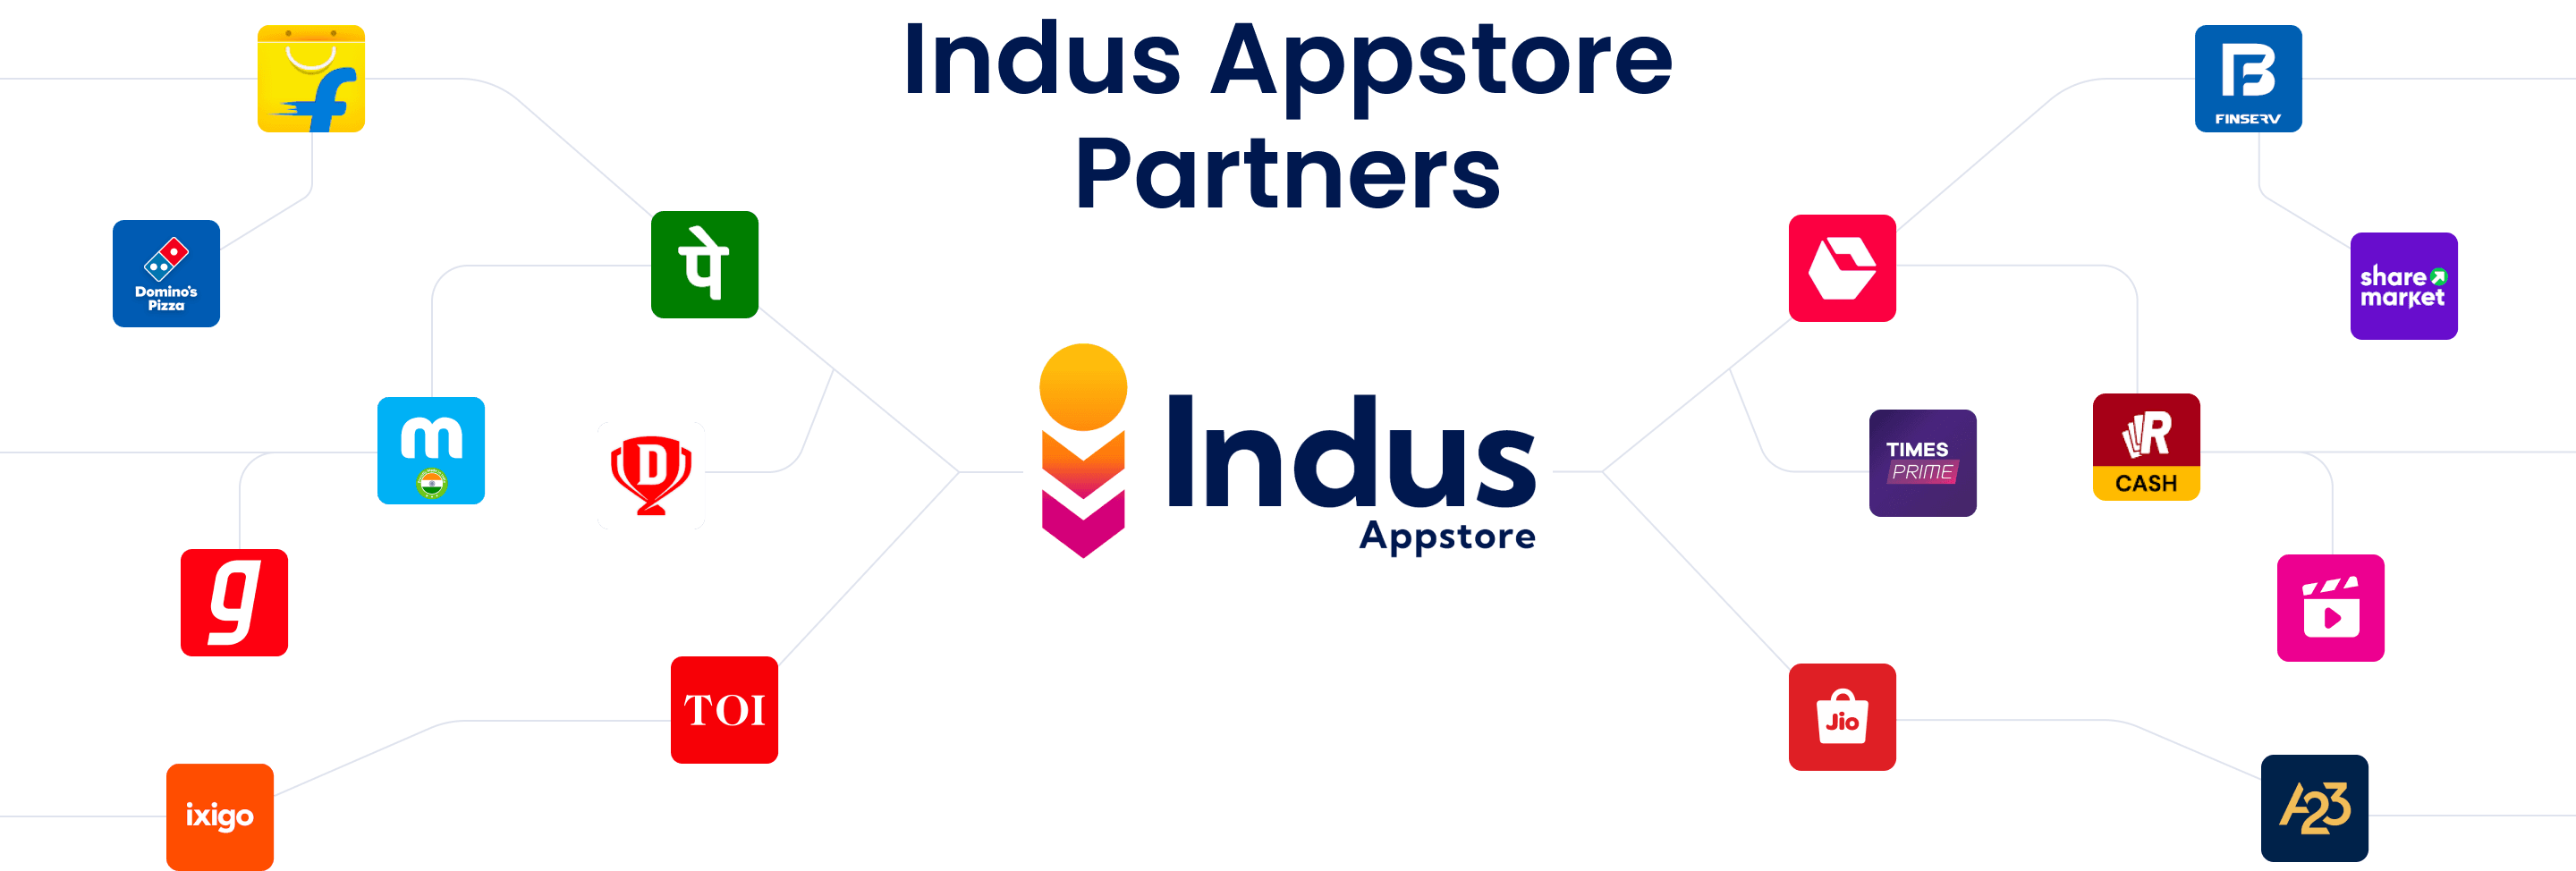 indus-partner-desktop